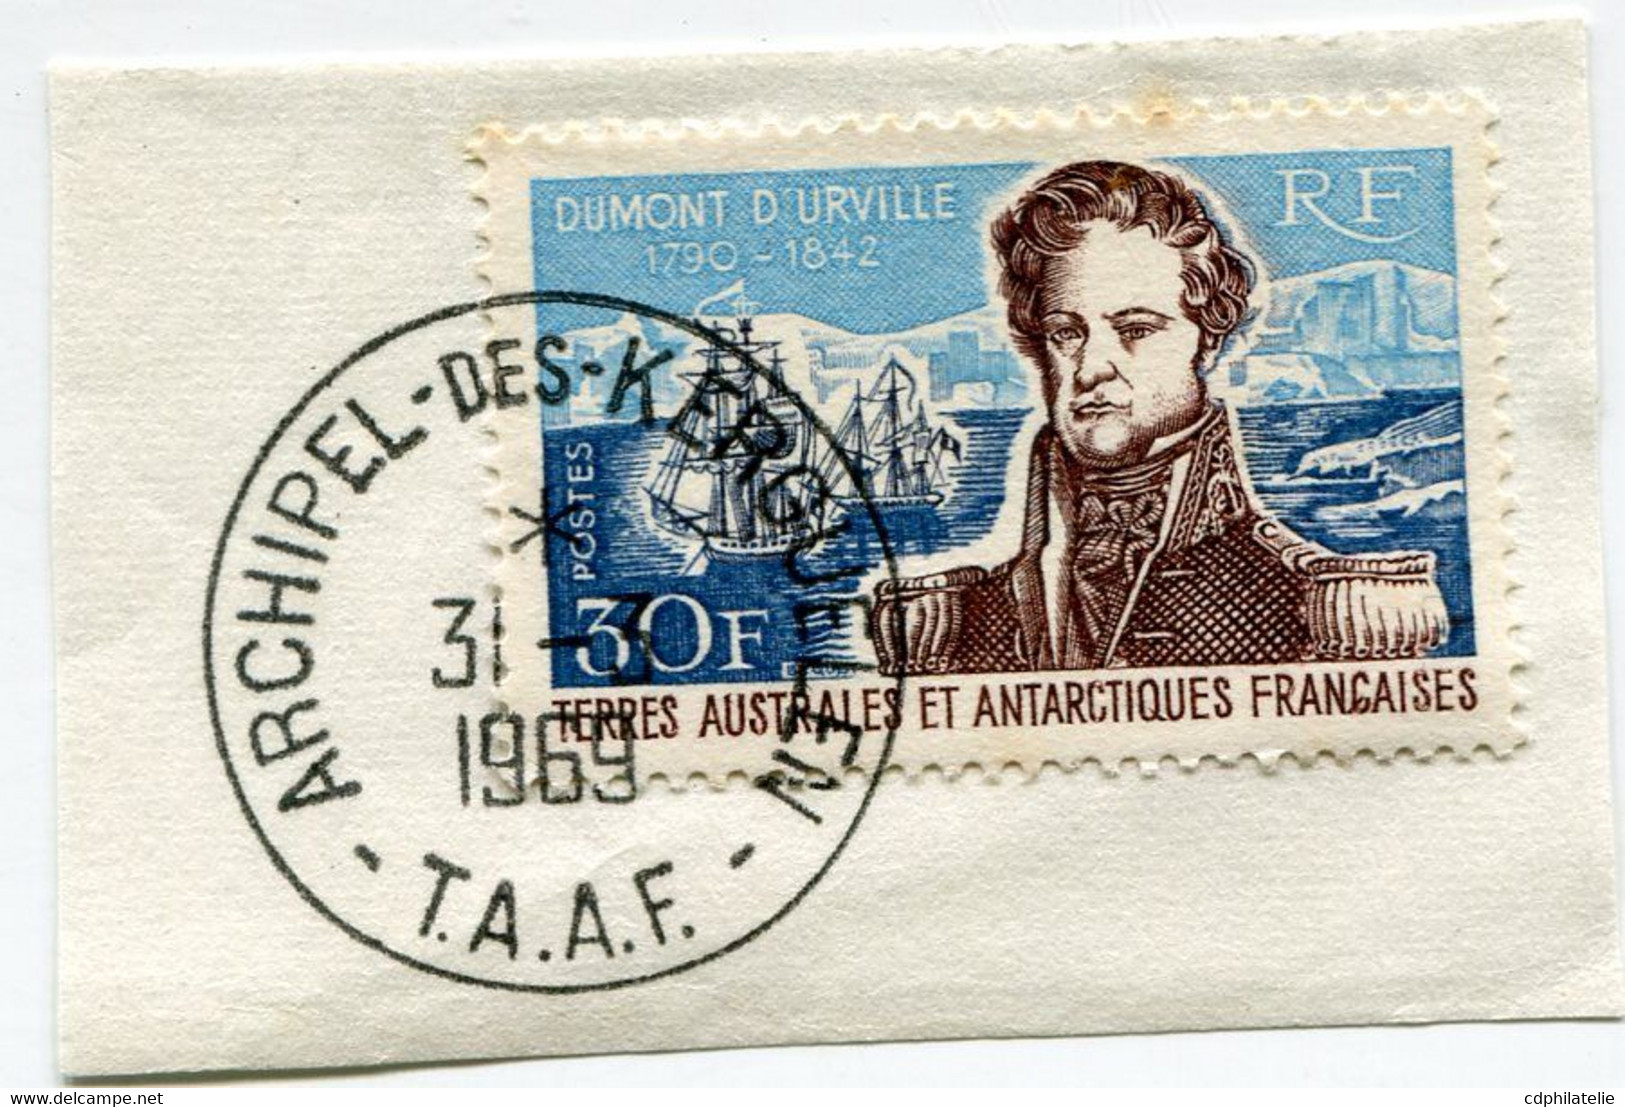 T. A. A. F. N°25 AMIRAL DUMONT D'URVILLE OBL. ARCHIPEL-DES-KERGUELEN 31-3-1969 - Used Stamps